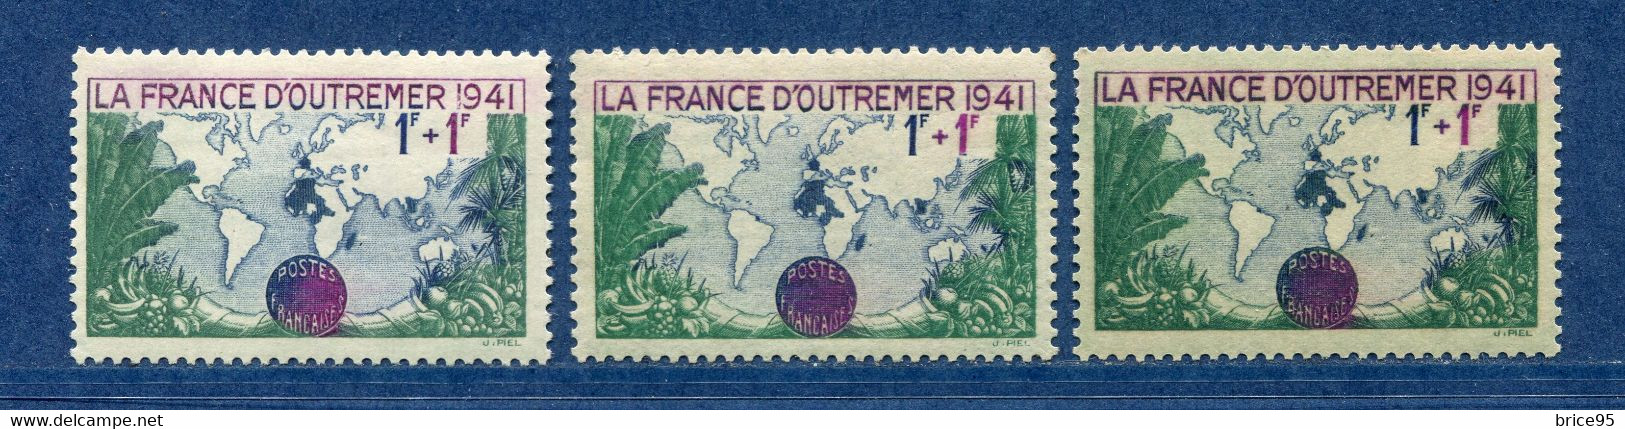 ⭐ France - Variété - YT N° 503 - Couleurs - Pétouille - Neuf Sans Charnière - 1941 ⭐ - Unused Stamps